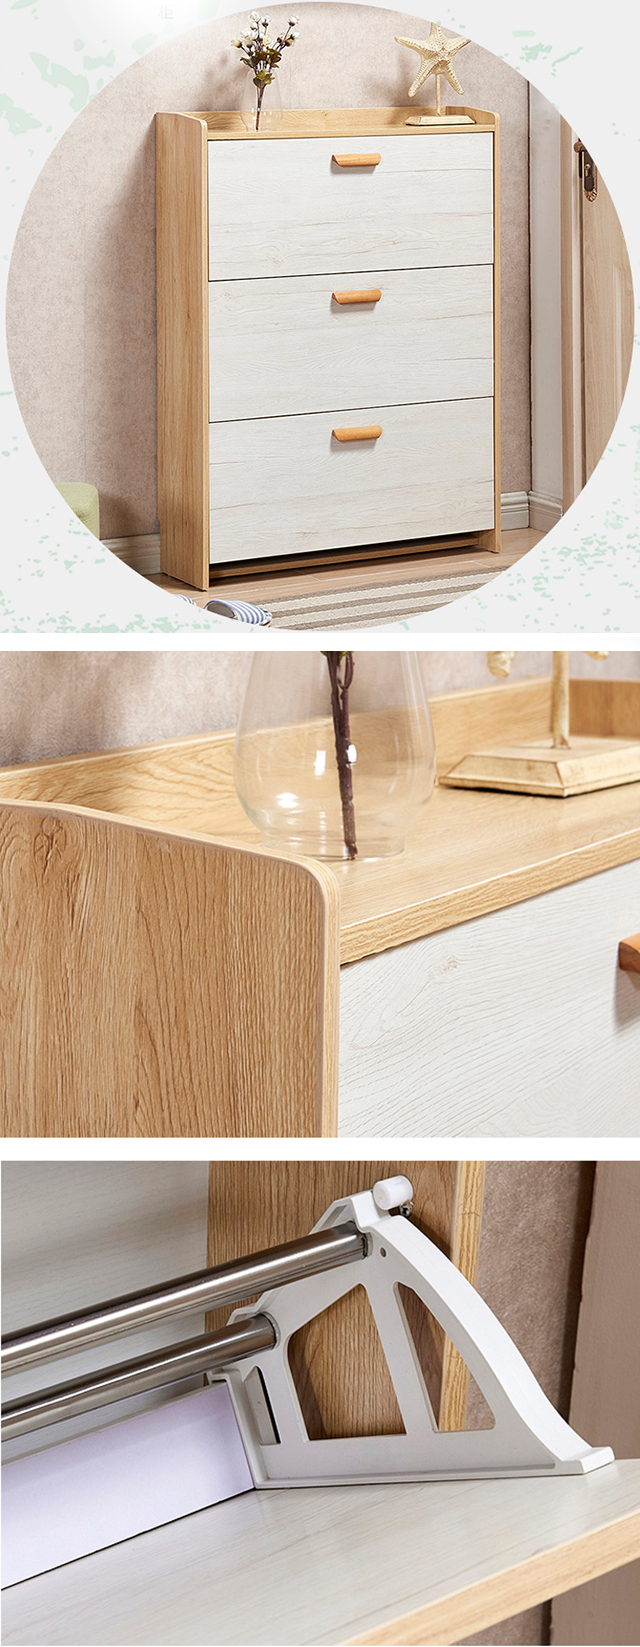 Доступным покрытый меламином дизайн деревянного шкафа ботинка портативный современный простой